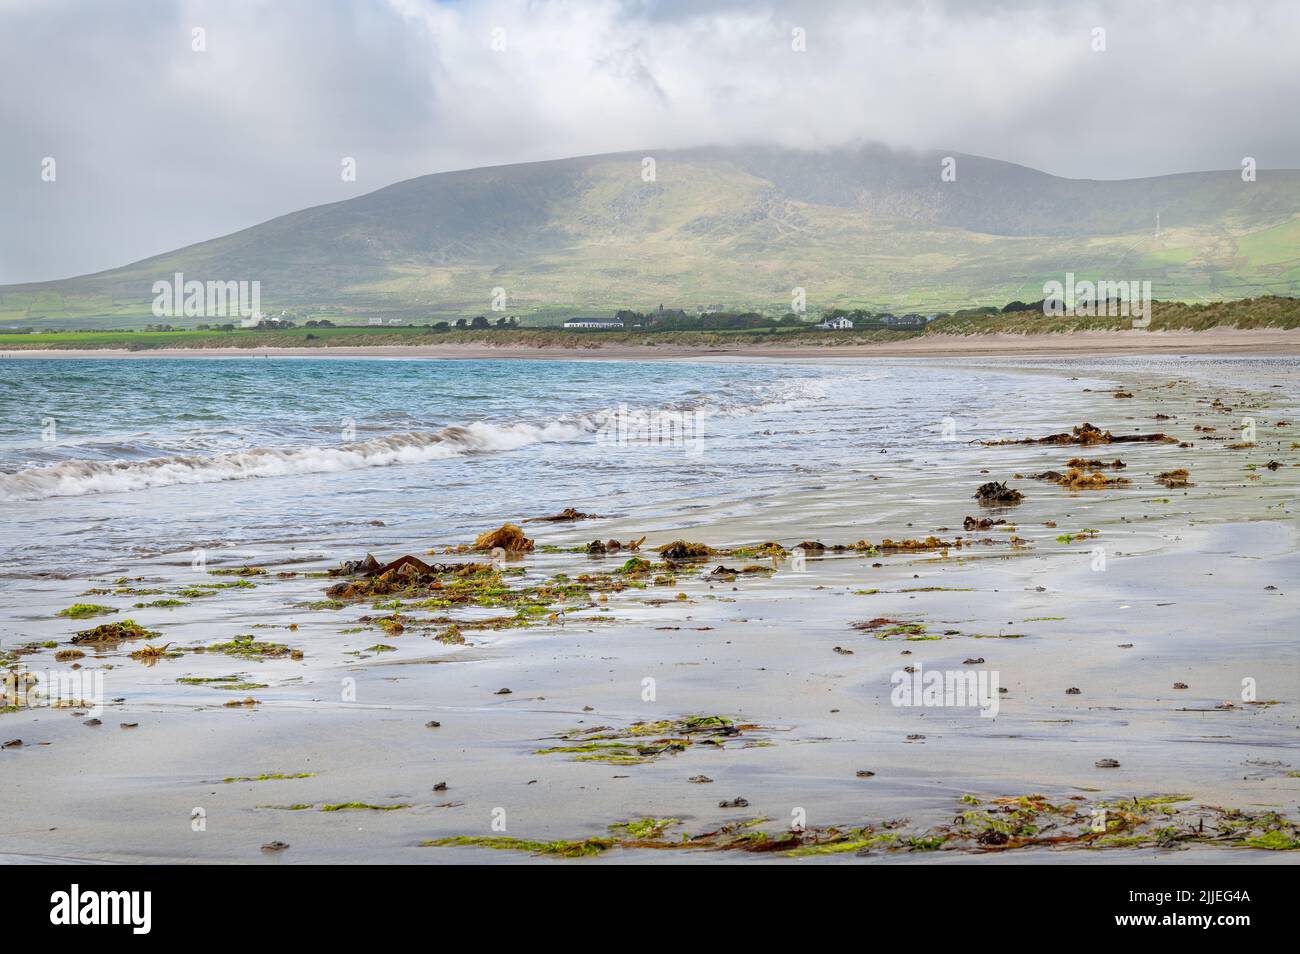 Ventry Bay Beach in County Kerry, Ireland Stock Photo